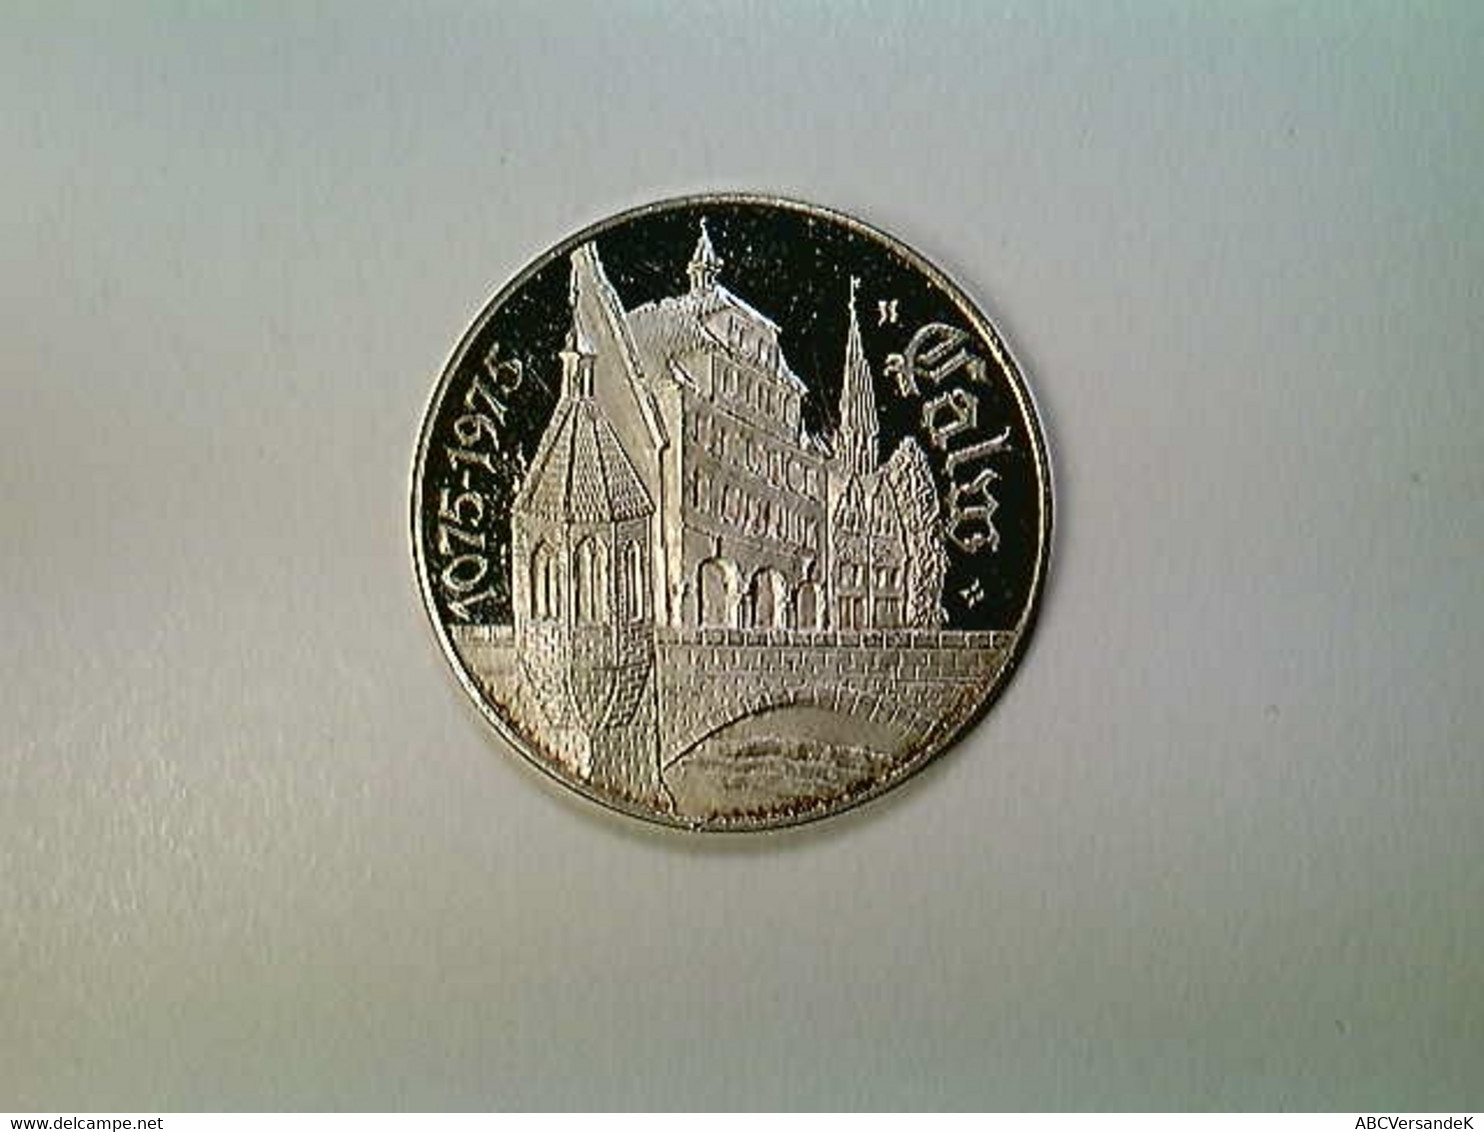 Medaille Calw, 900 Jahre 1075-1975, Silber 999 - Numismatik